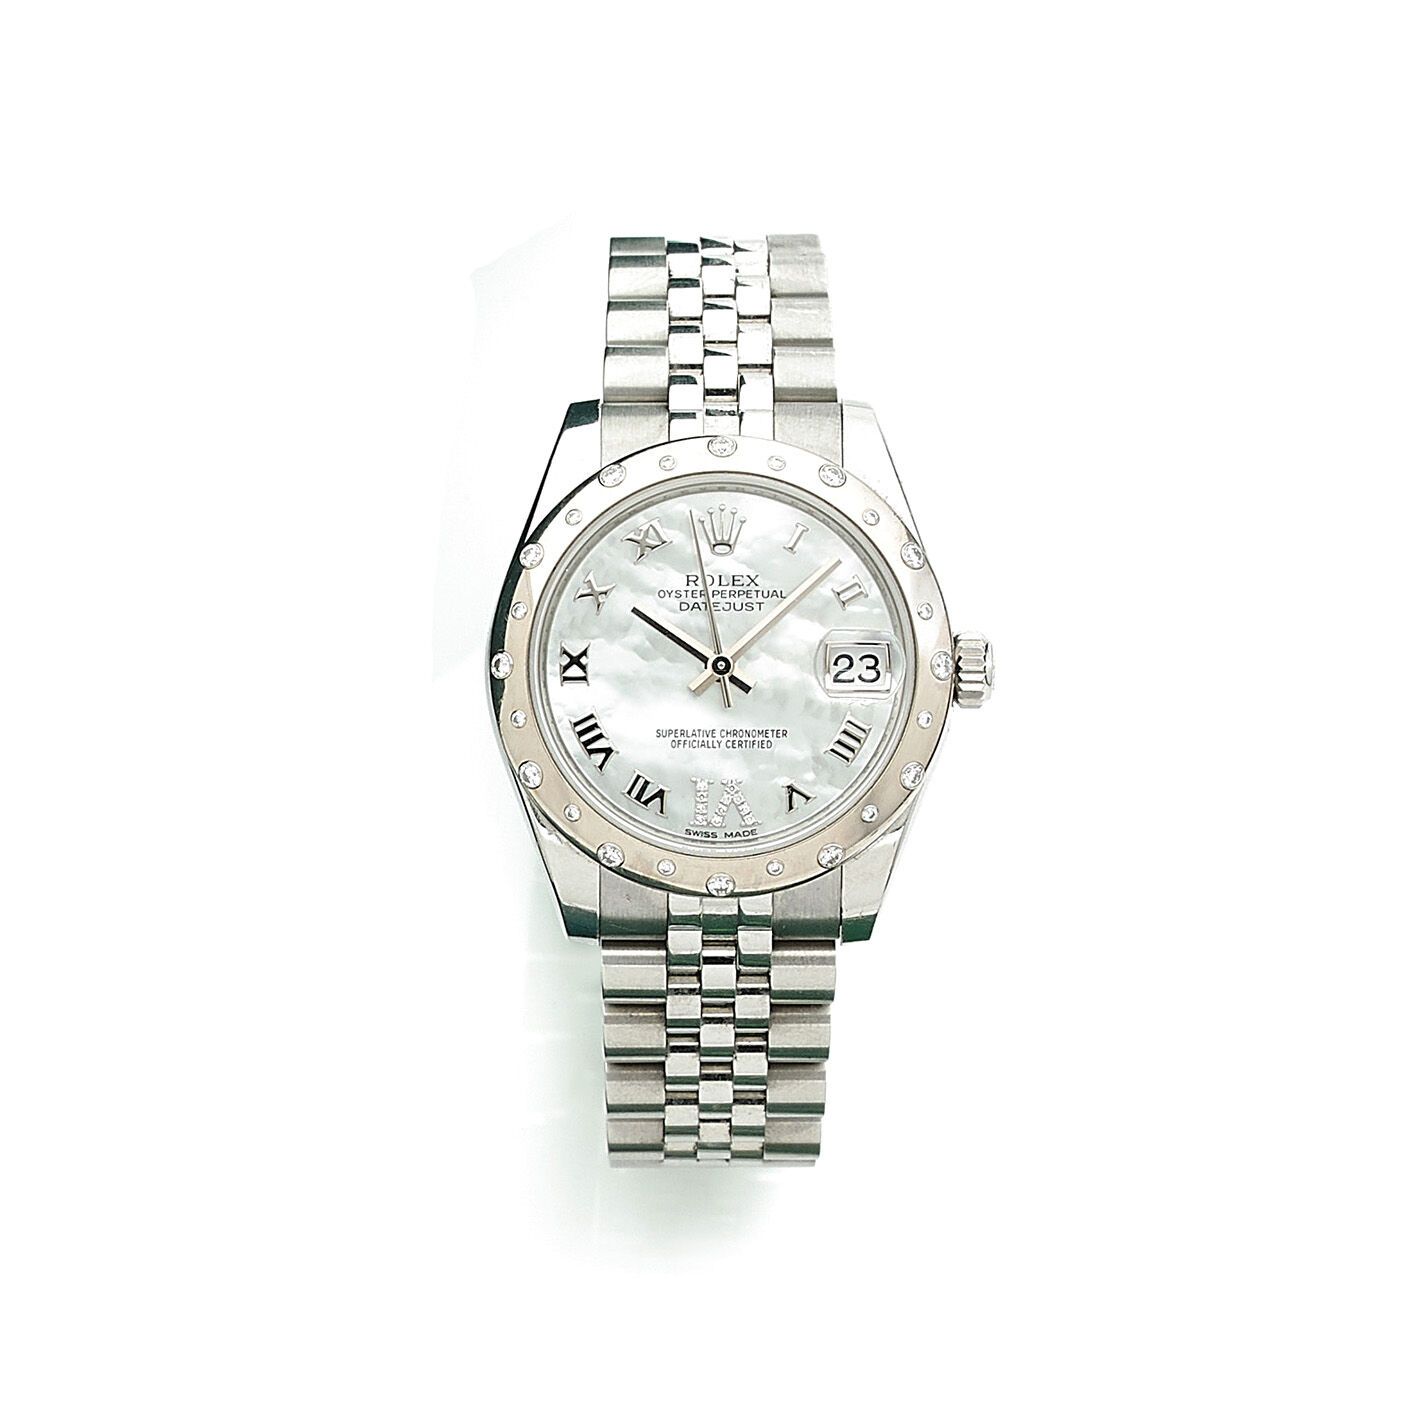 ROLEX DATEJUST 31 ROLEX DATEJUST 31
Steel women's wristwatch, circa 2015, refere&hellip;